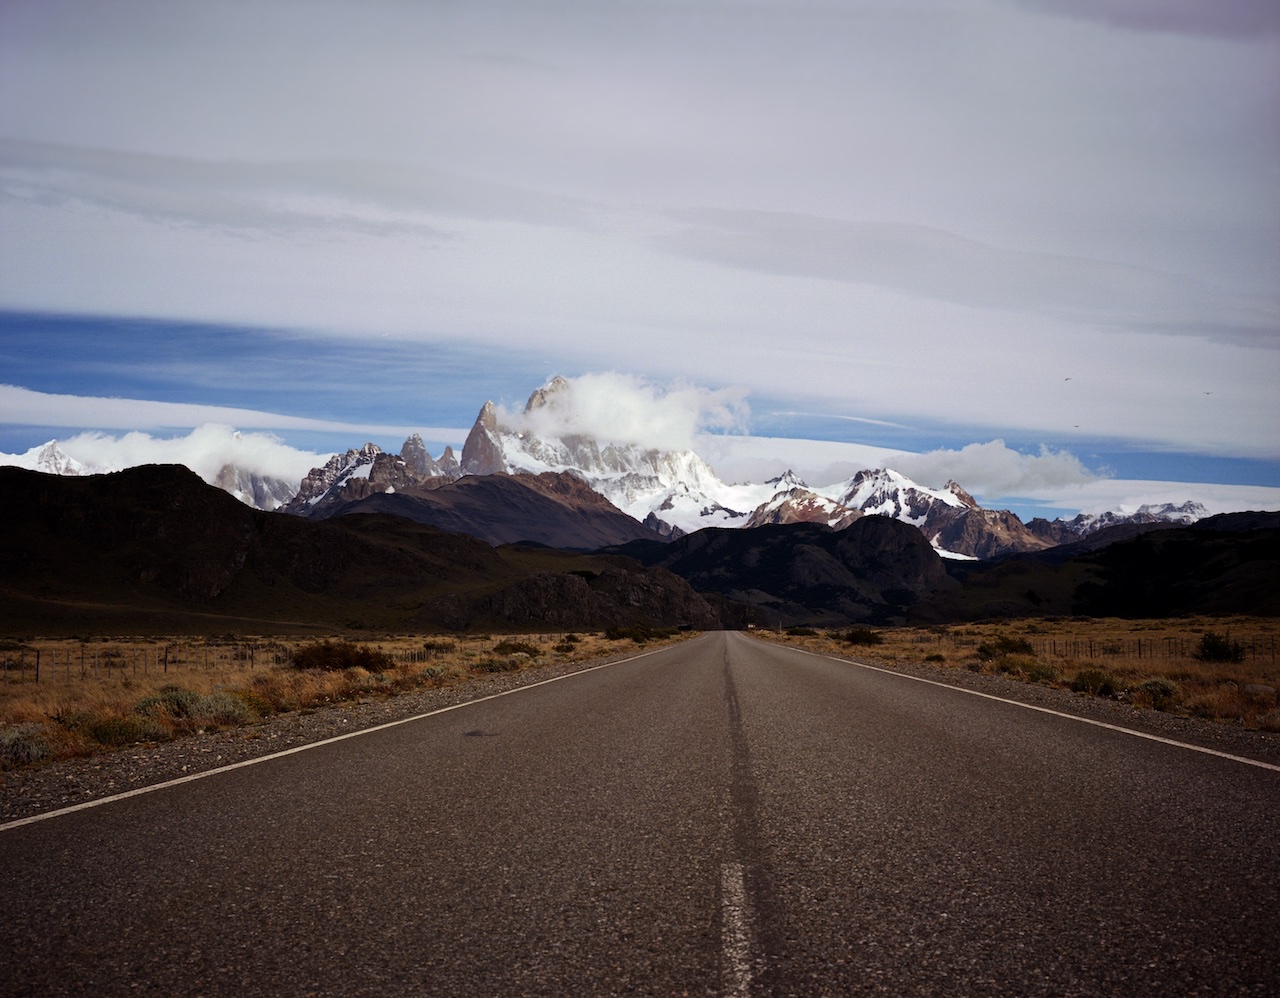 Argentina, Patagonia, Santa Cruz, El Chalten, Parque Nacionales Los Glaciares North, Cerro Fitz Roy